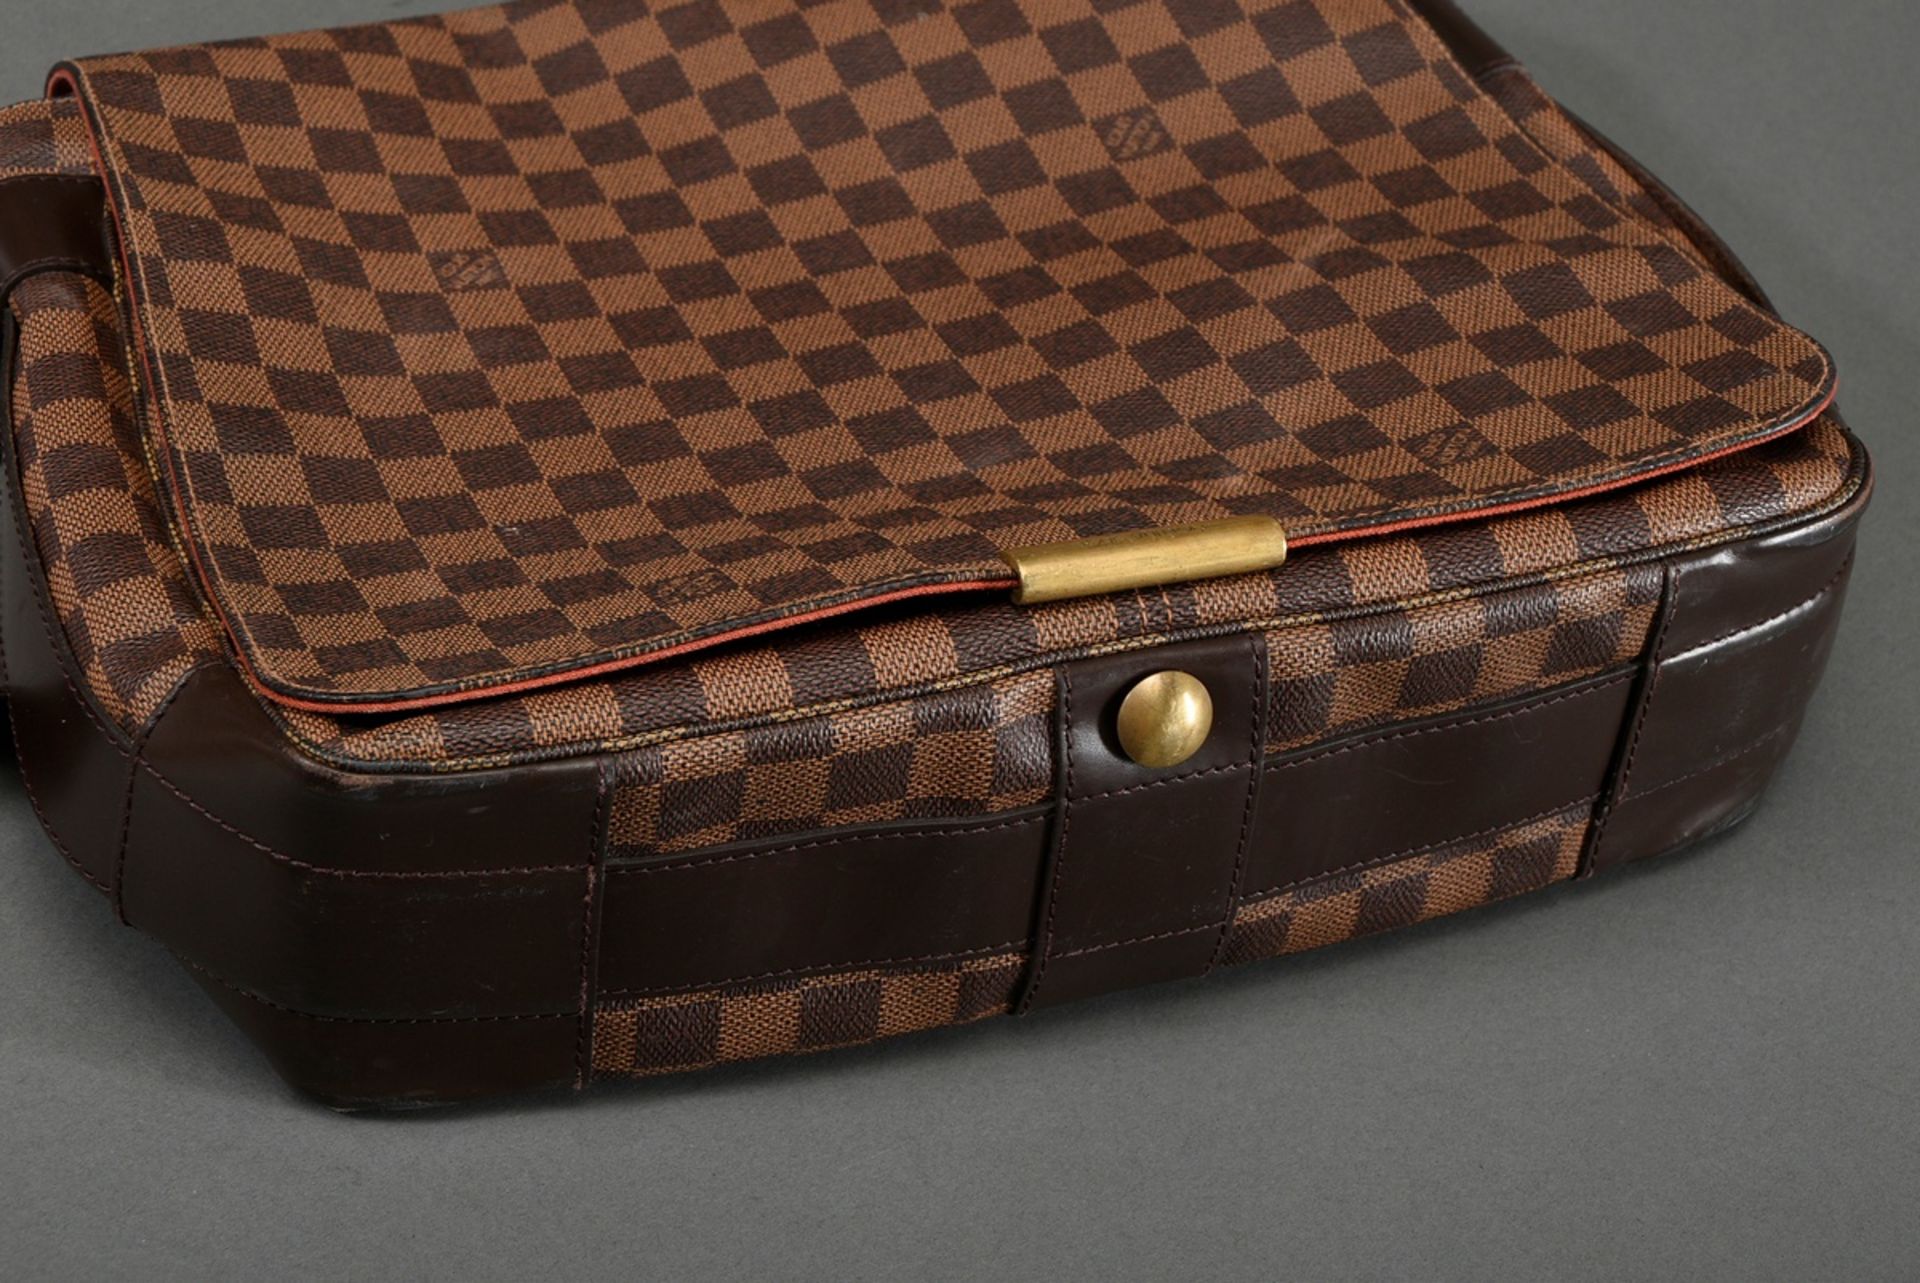 Louis Vuitton vintage "Bastille" messenger bag in damier level canvas with dark brown adjustable le - Image 7 of 8